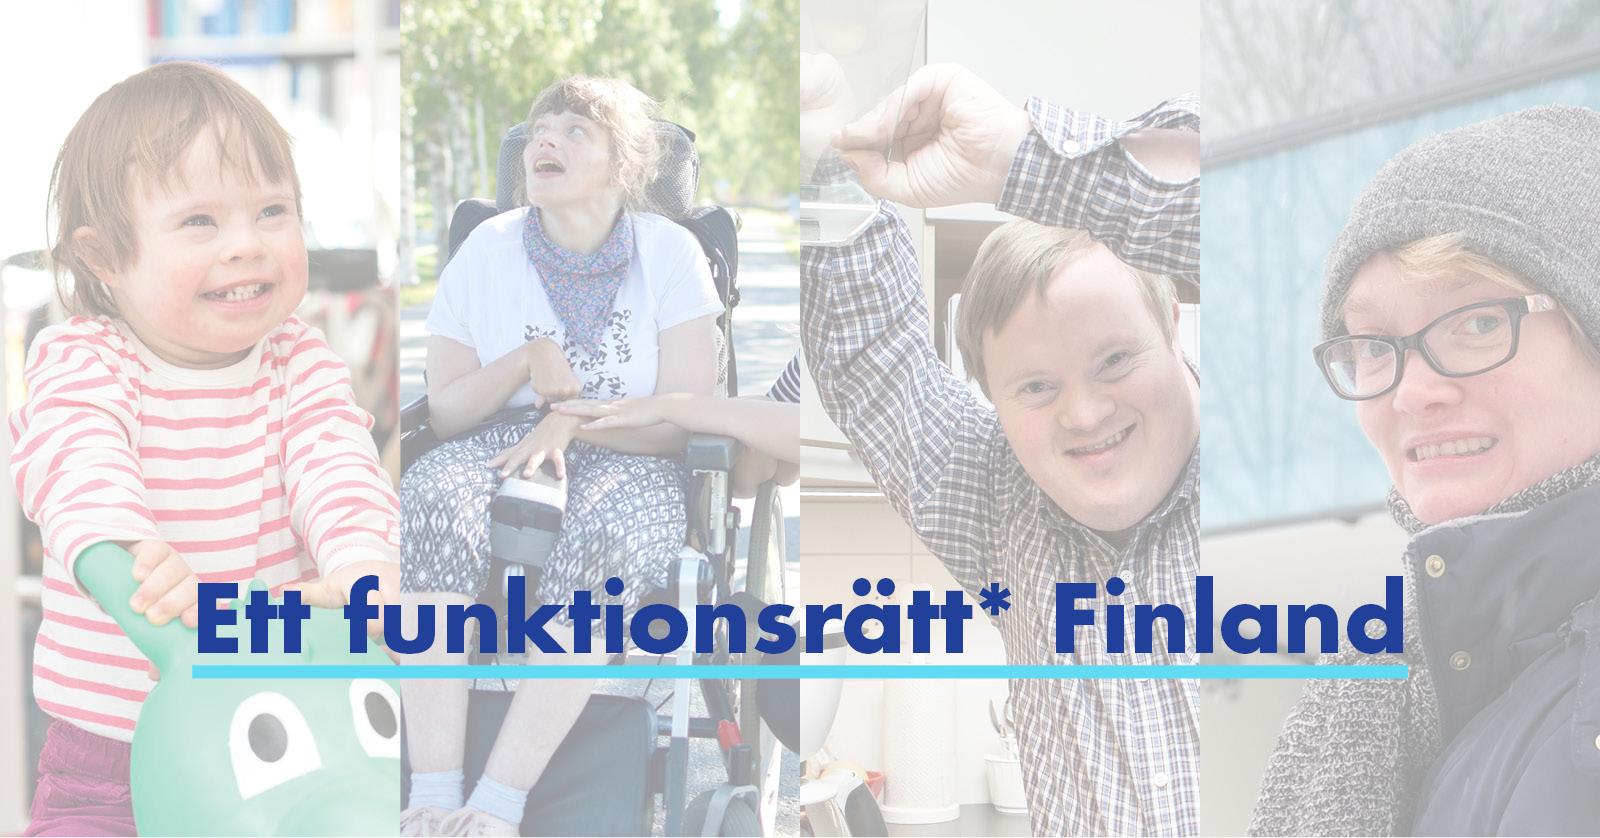 Personer med funktionsnedsättning och texten Ett funktionsrätt Finland